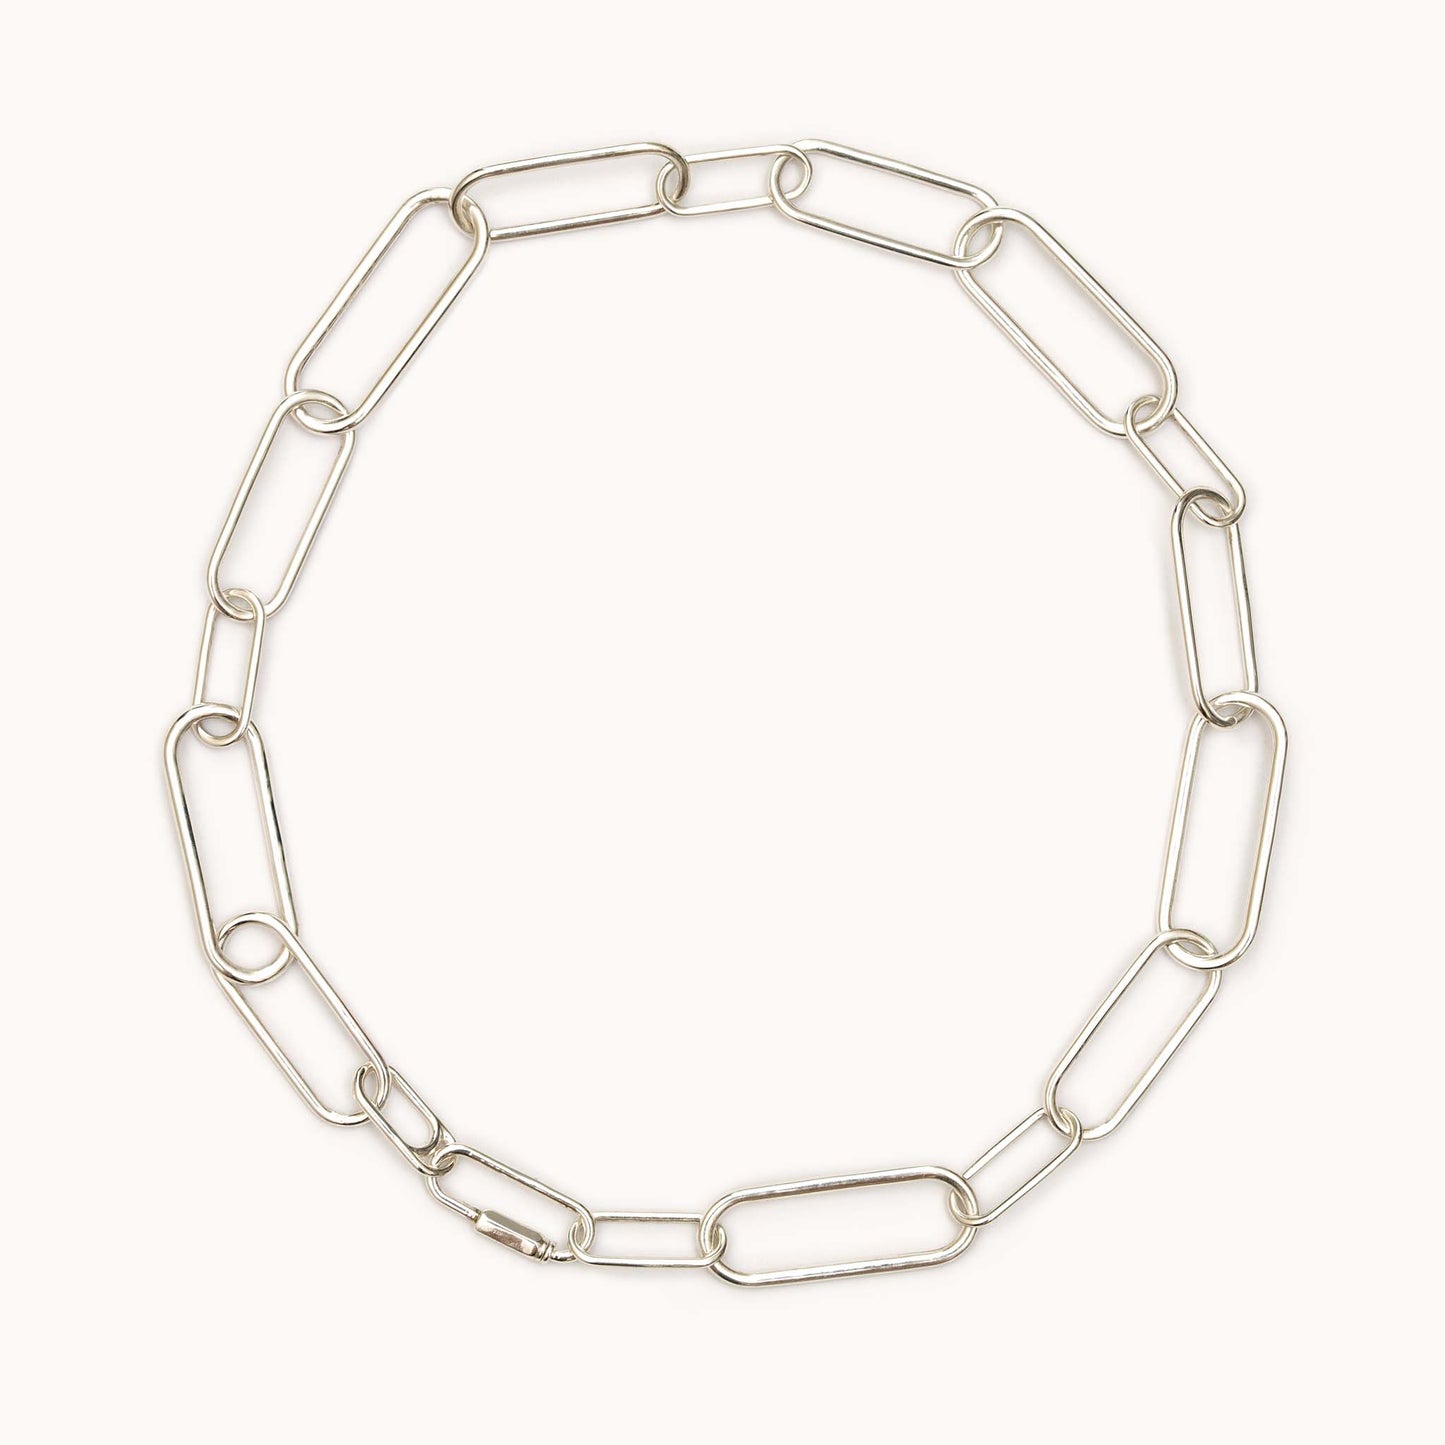 Random Chain Necklace カラビナネックレス